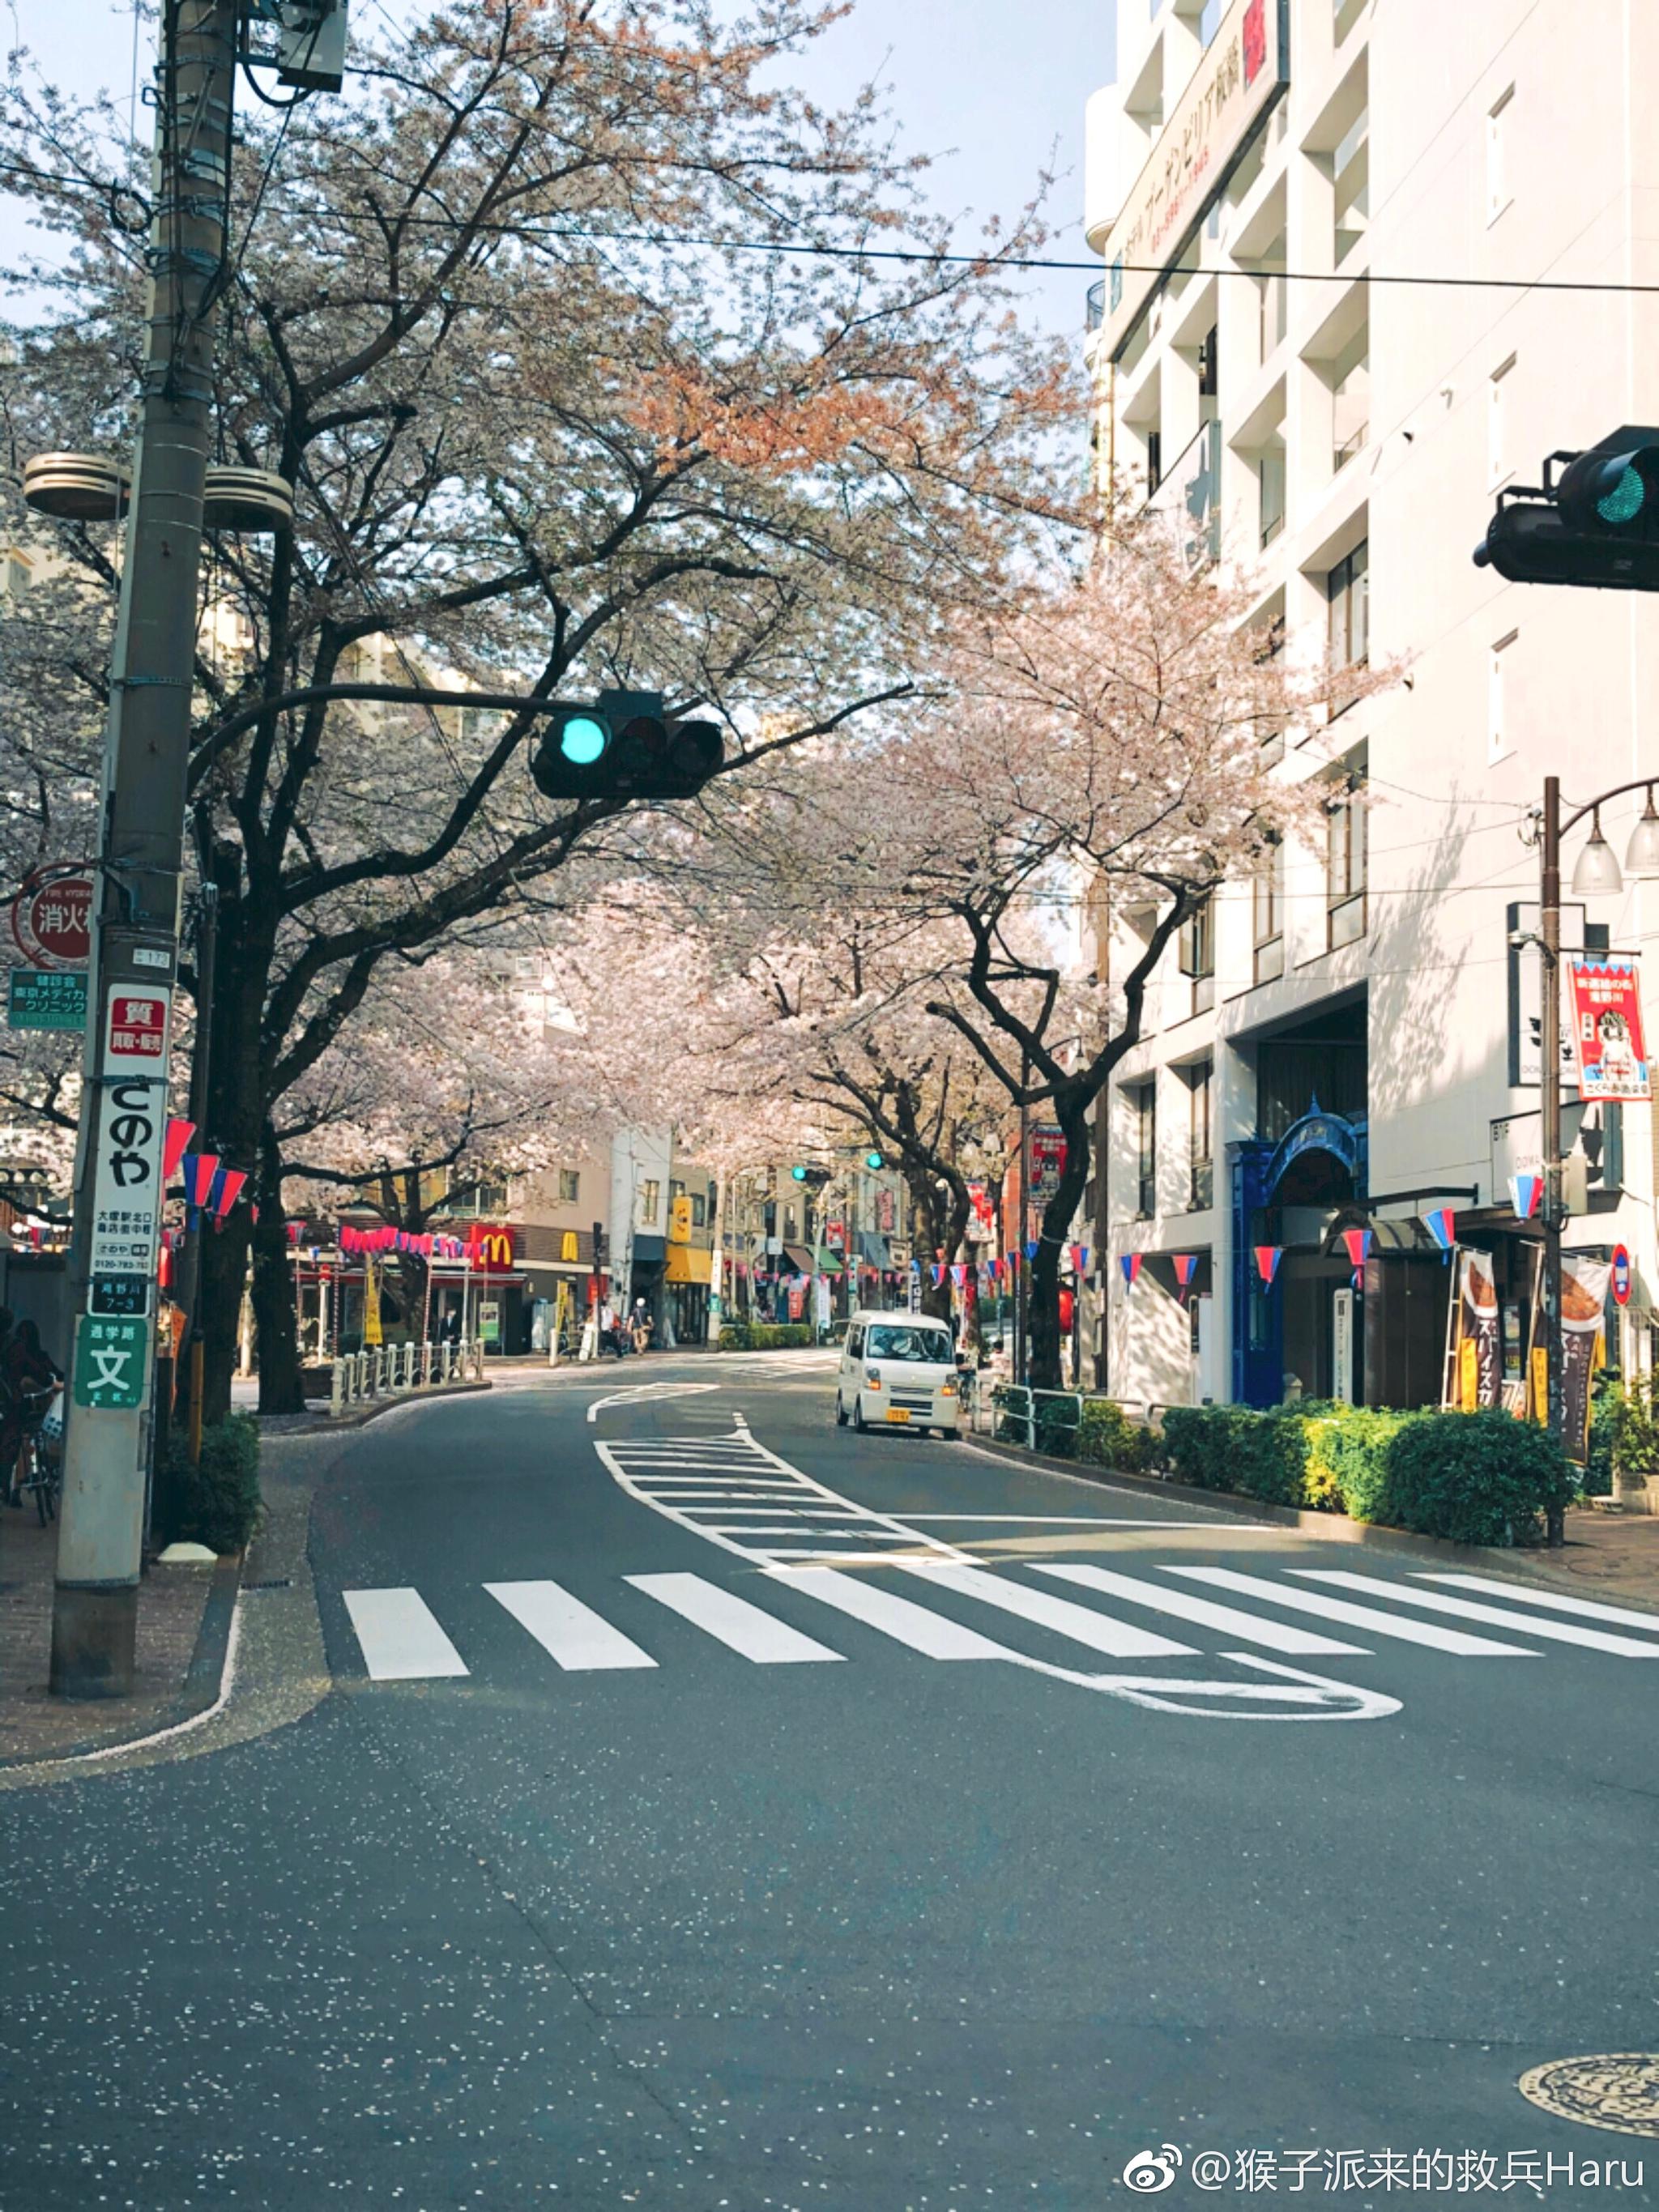 樱花的照片街道图片